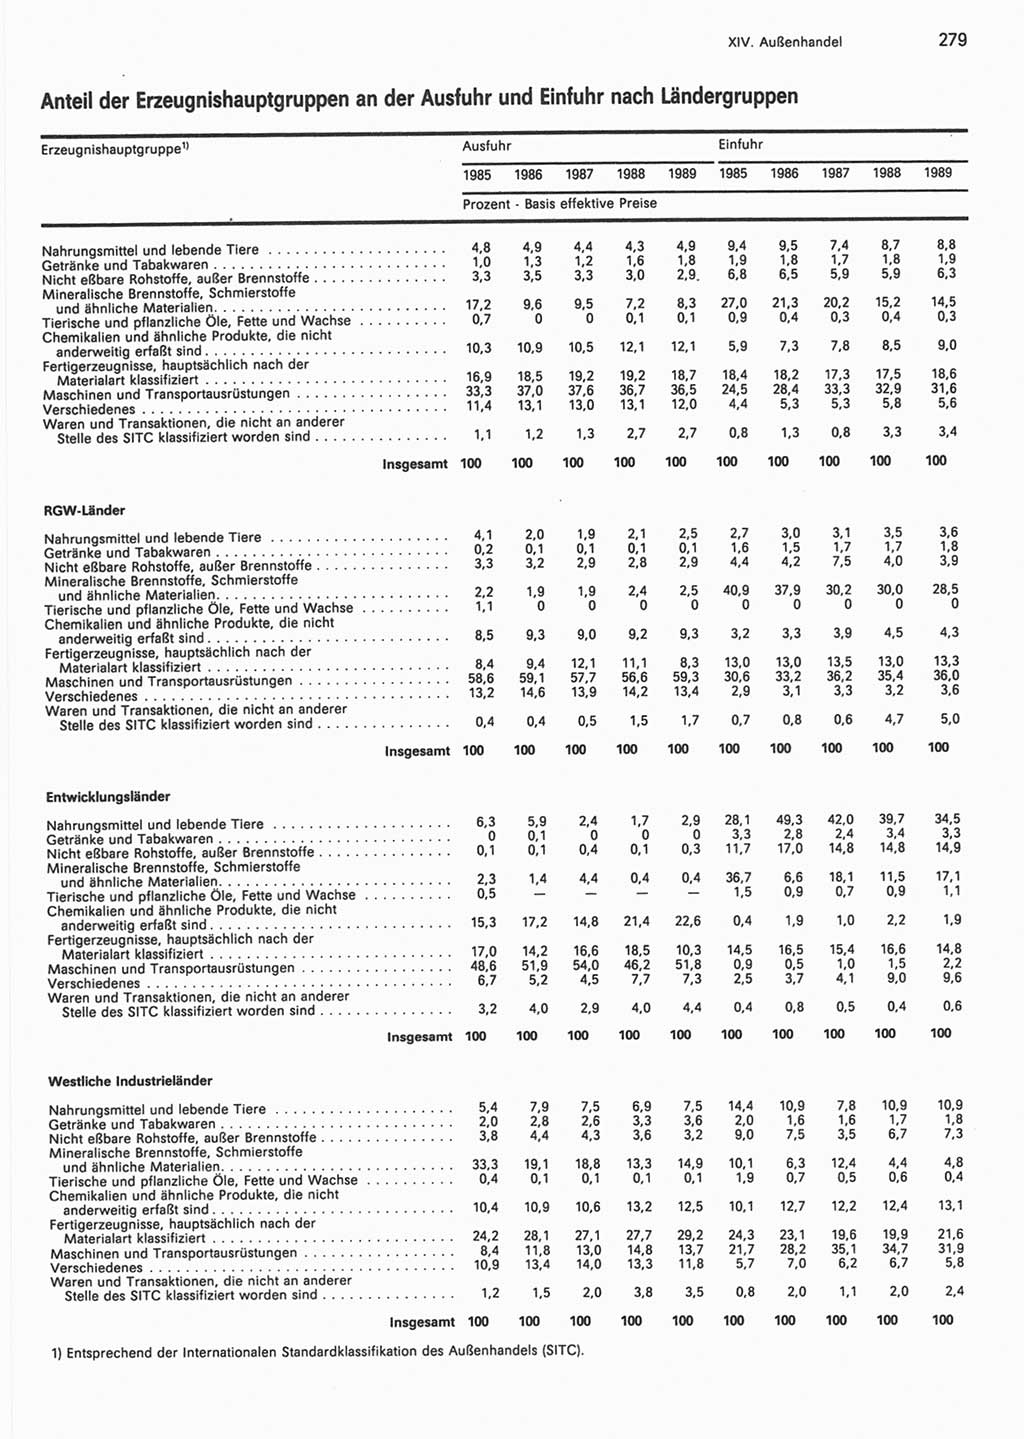 Statistisches Jahrbuch der Deutschen Demokratischen Republik (DDR) 1990, Seite 279 (Stat. Jb. DDR 1990, S. 279)